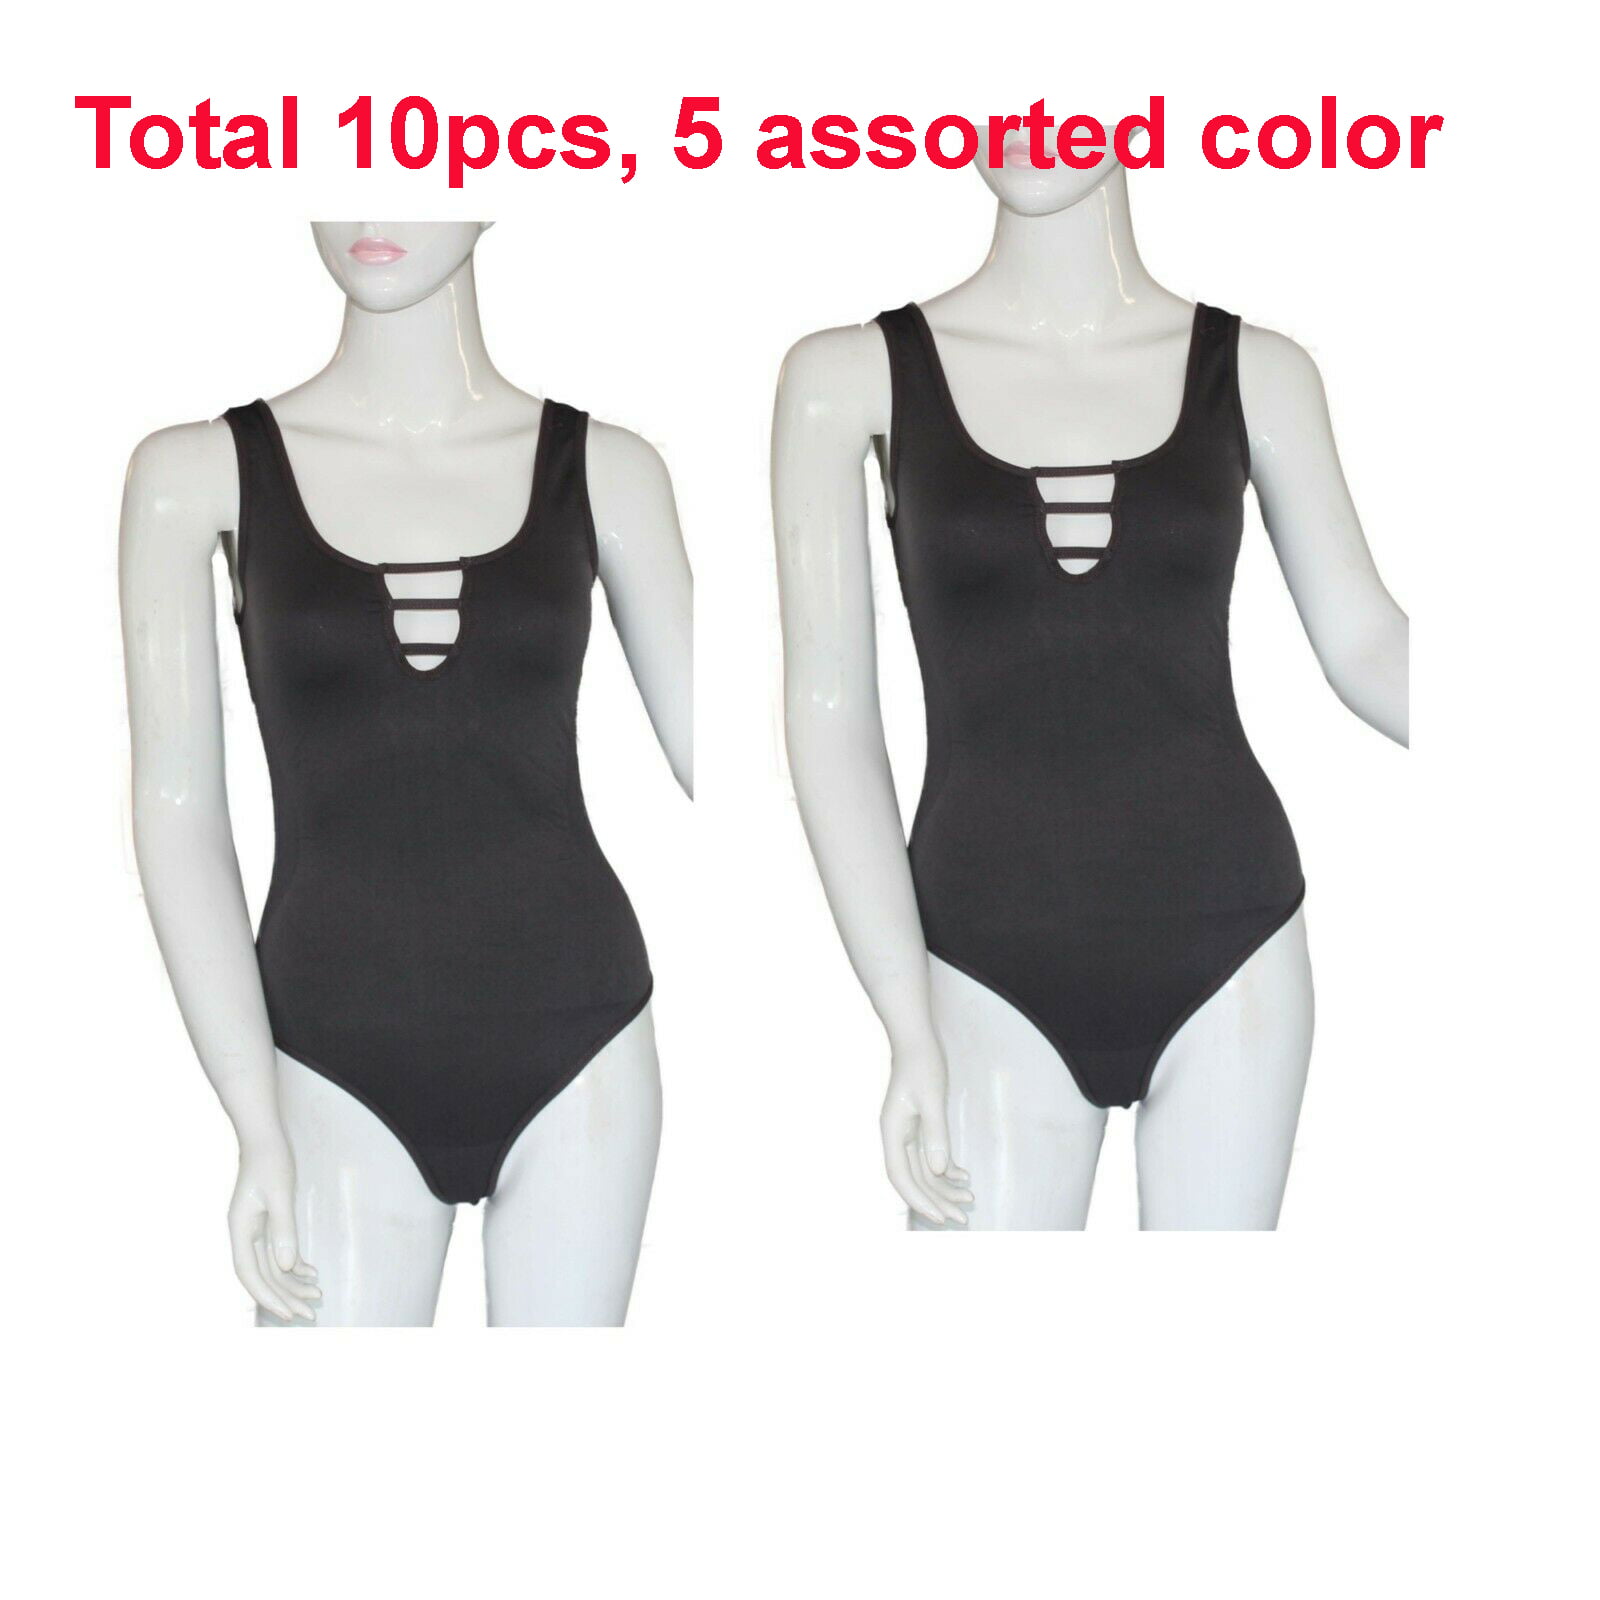 Wholesale Women's Jumpsuit Tank Top Bodysuits Lot 10pcs 5 assorted Color -  Walmart.com